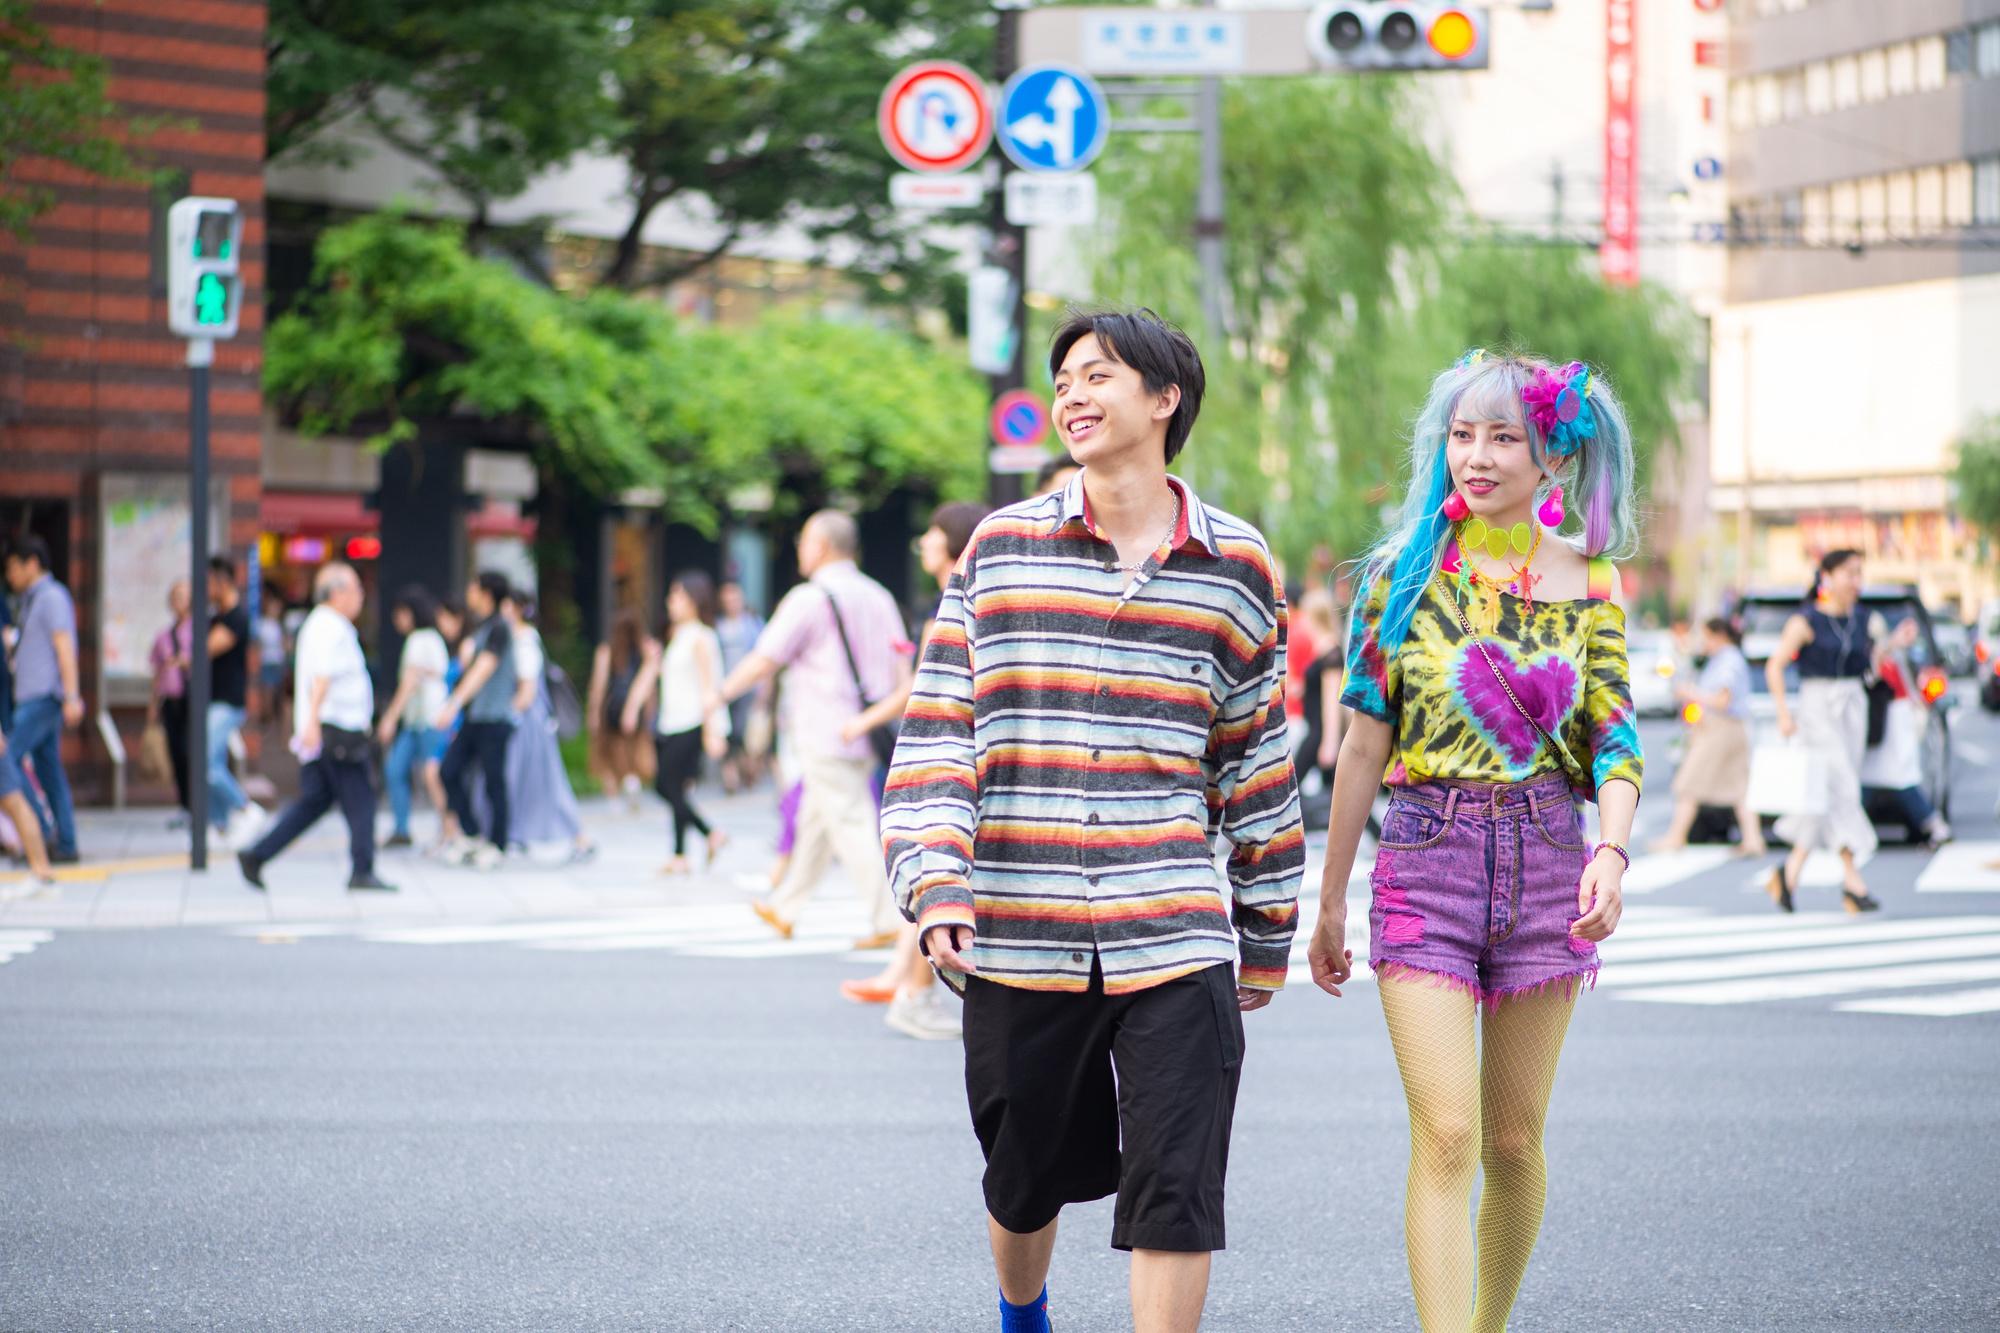 Dit kleurrijke koppel zou bij ons op straat nogal wat aandacht trekken. In Japan zijn dit soort outfits de normaalste zaak van de wereld.